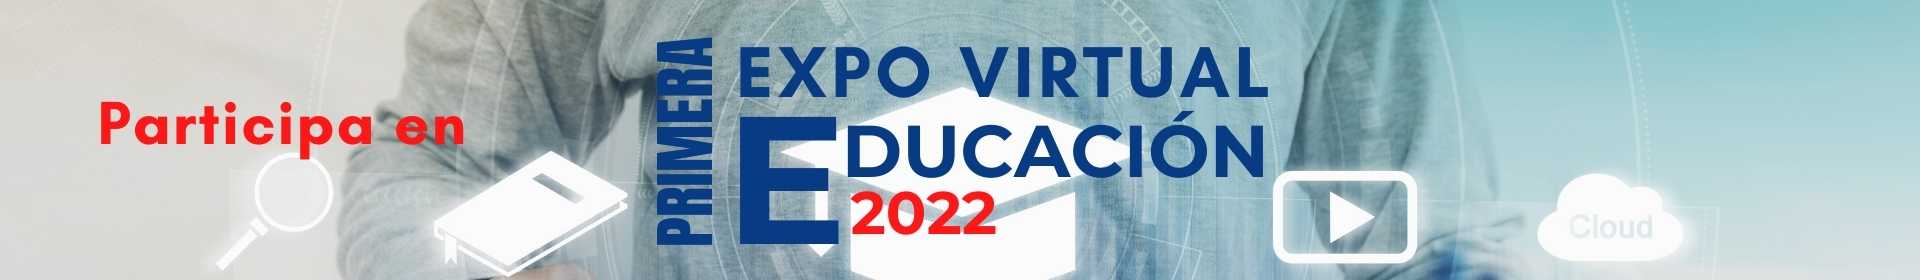 Expo Virtual Educación 2022 - feria evento online